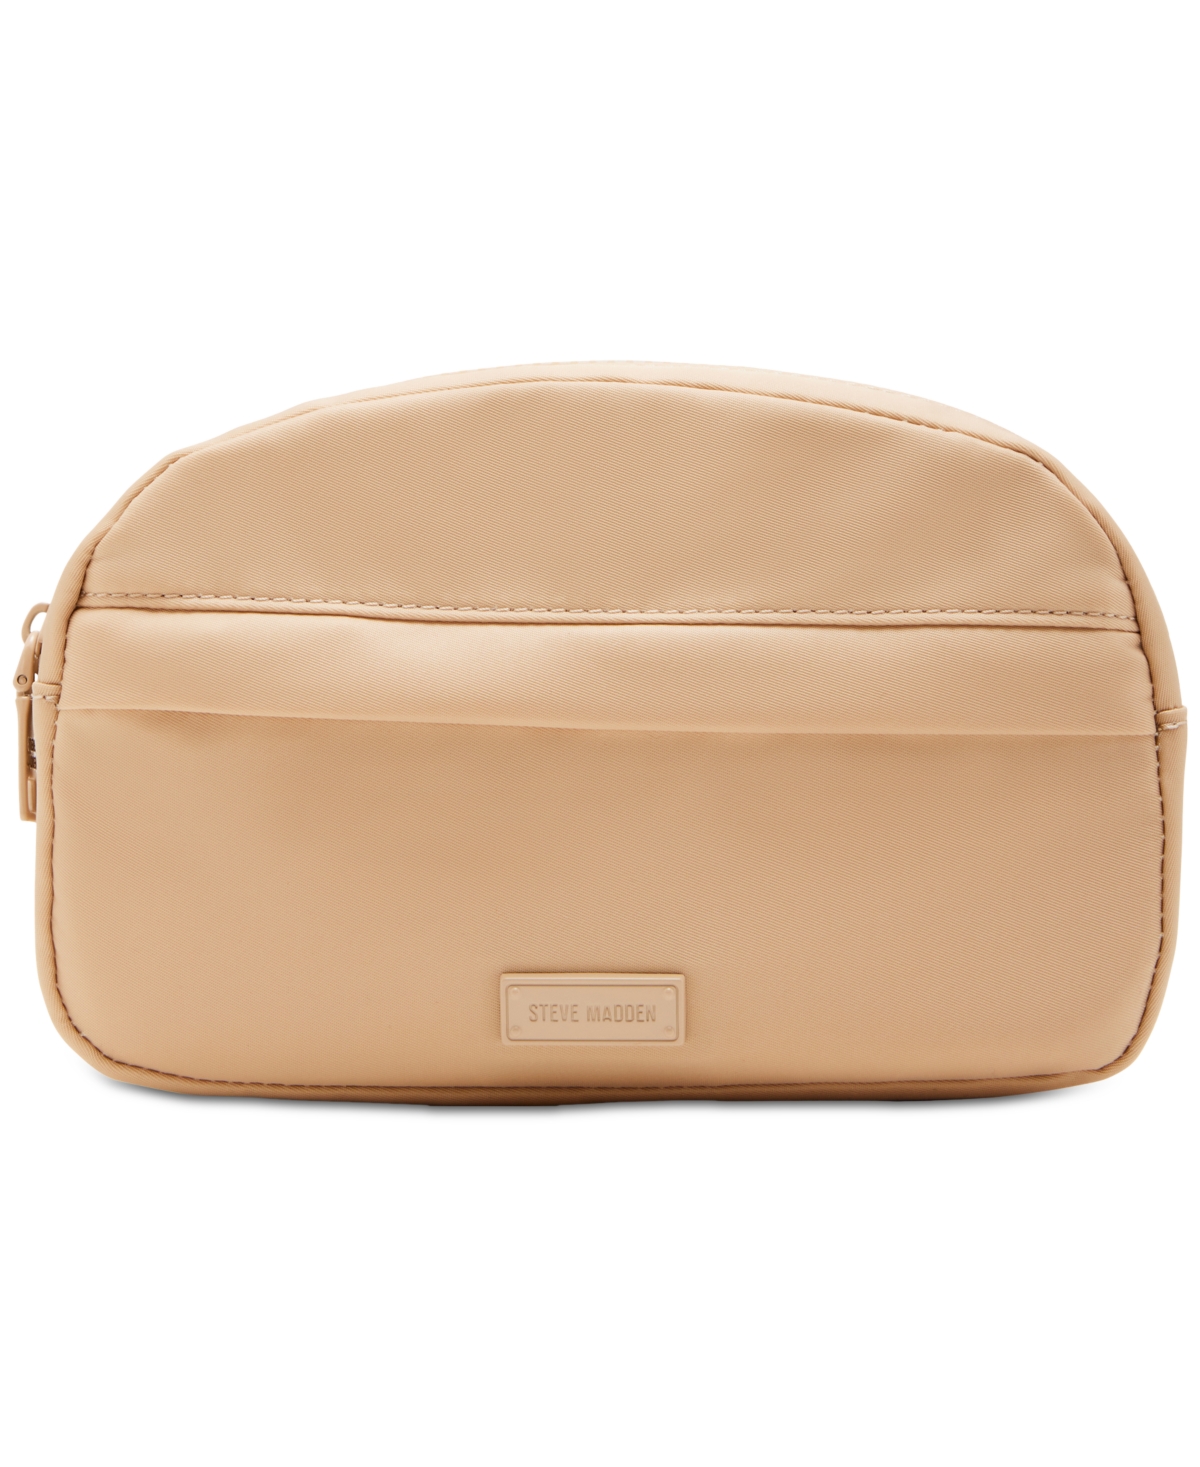 Women's Convertible Zip Belt Bag - Tan